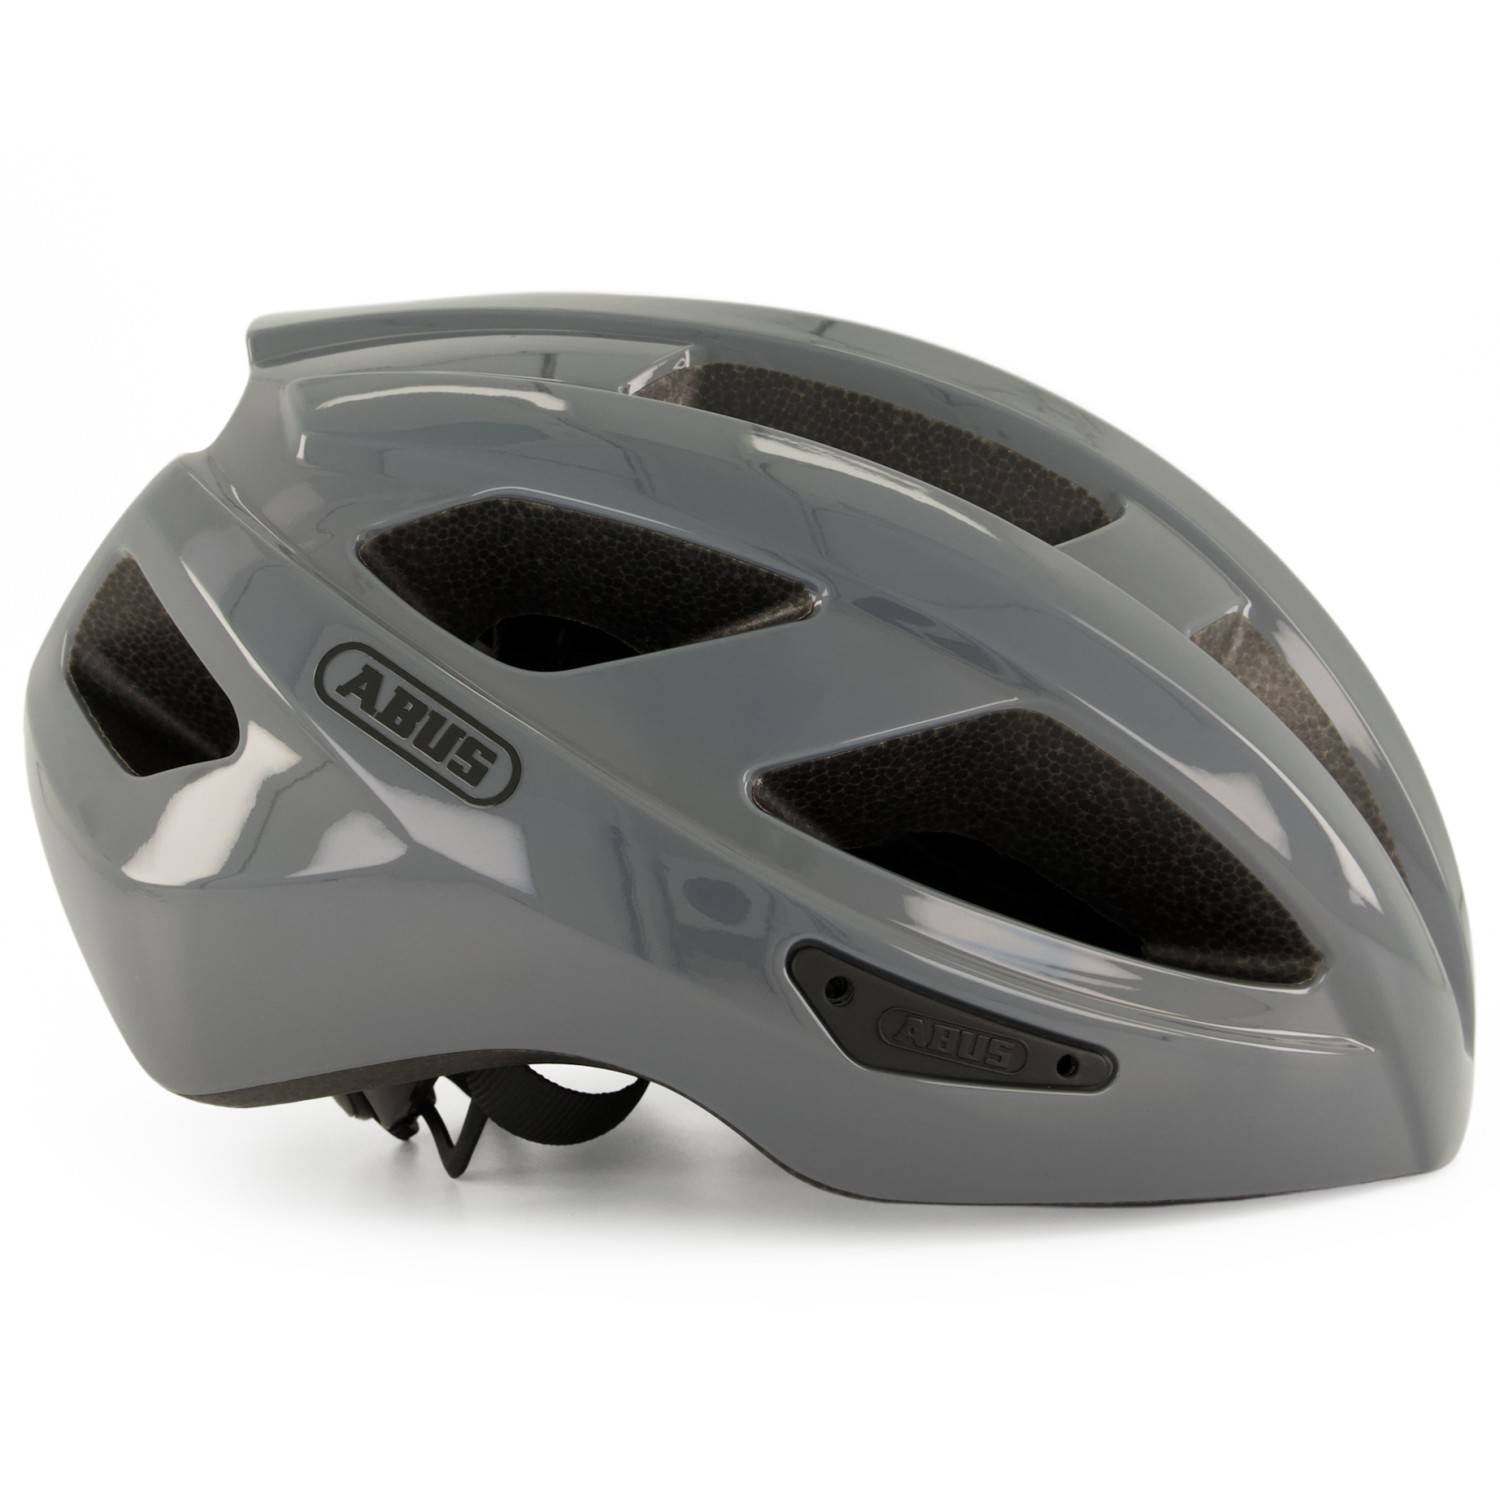 Велосипедный шлем Abus Macator, цвет Race Grey